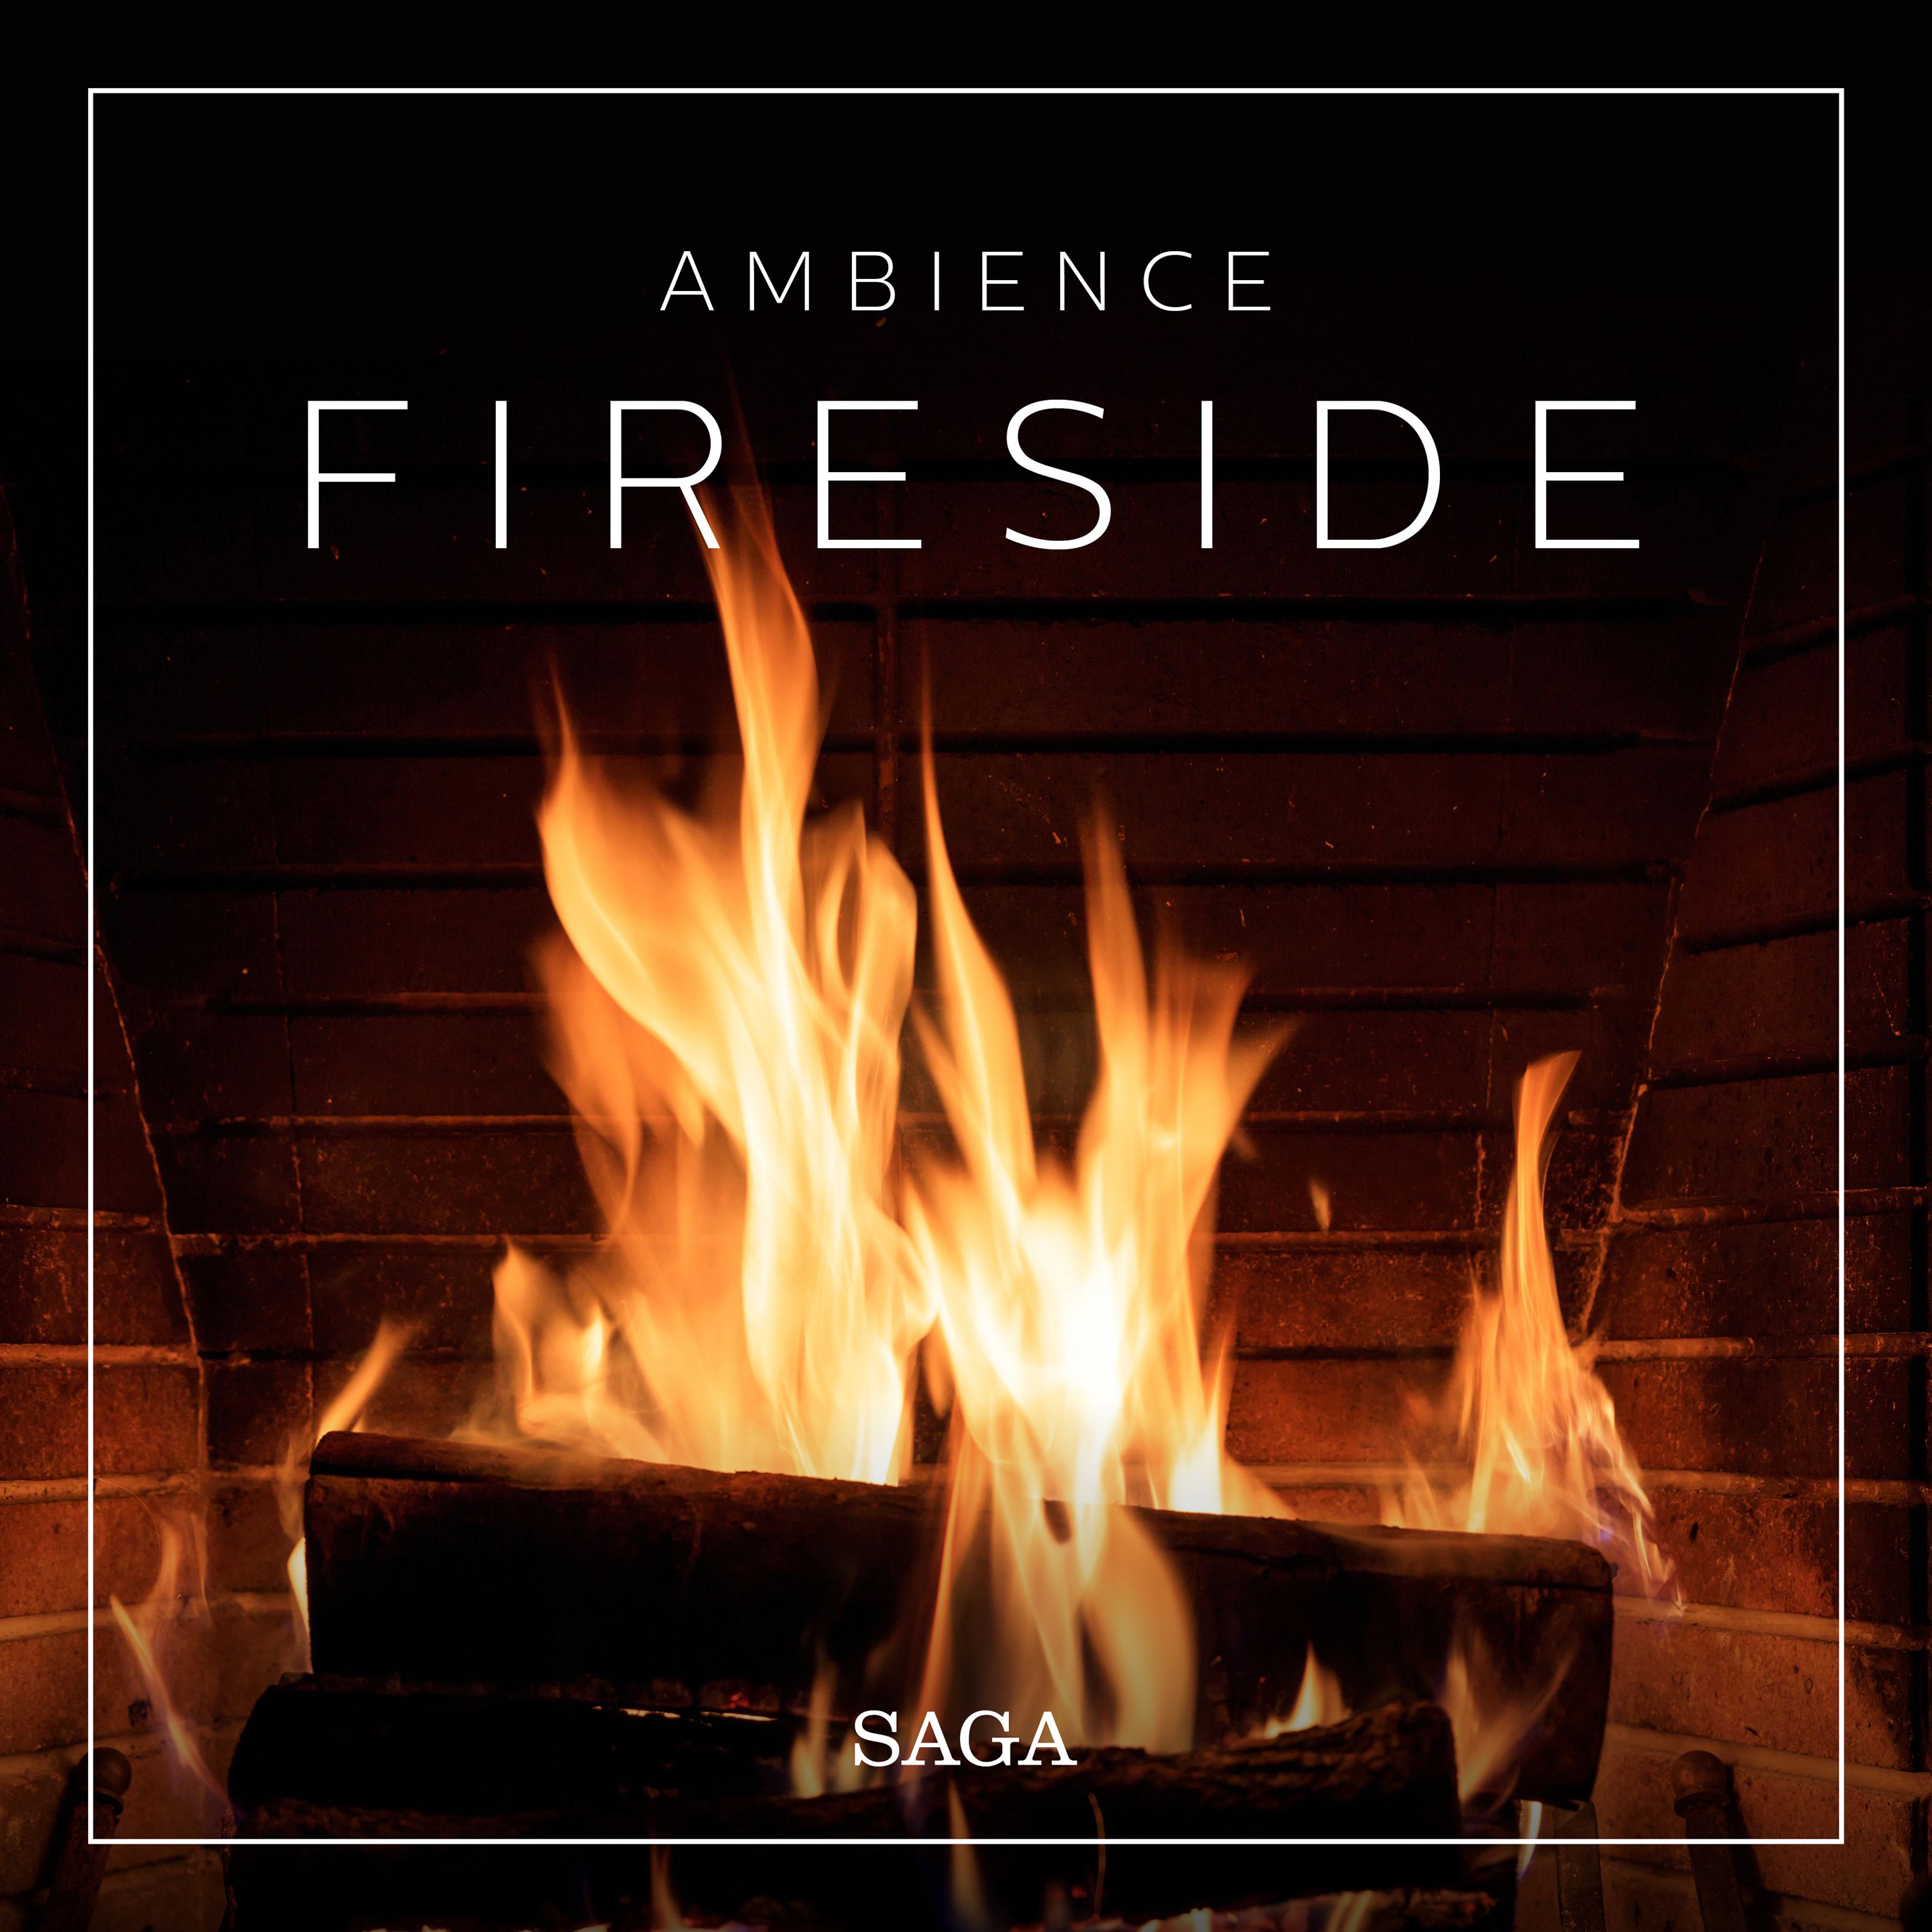 Ambience - Fireside, lydbog af Rasmus Broe